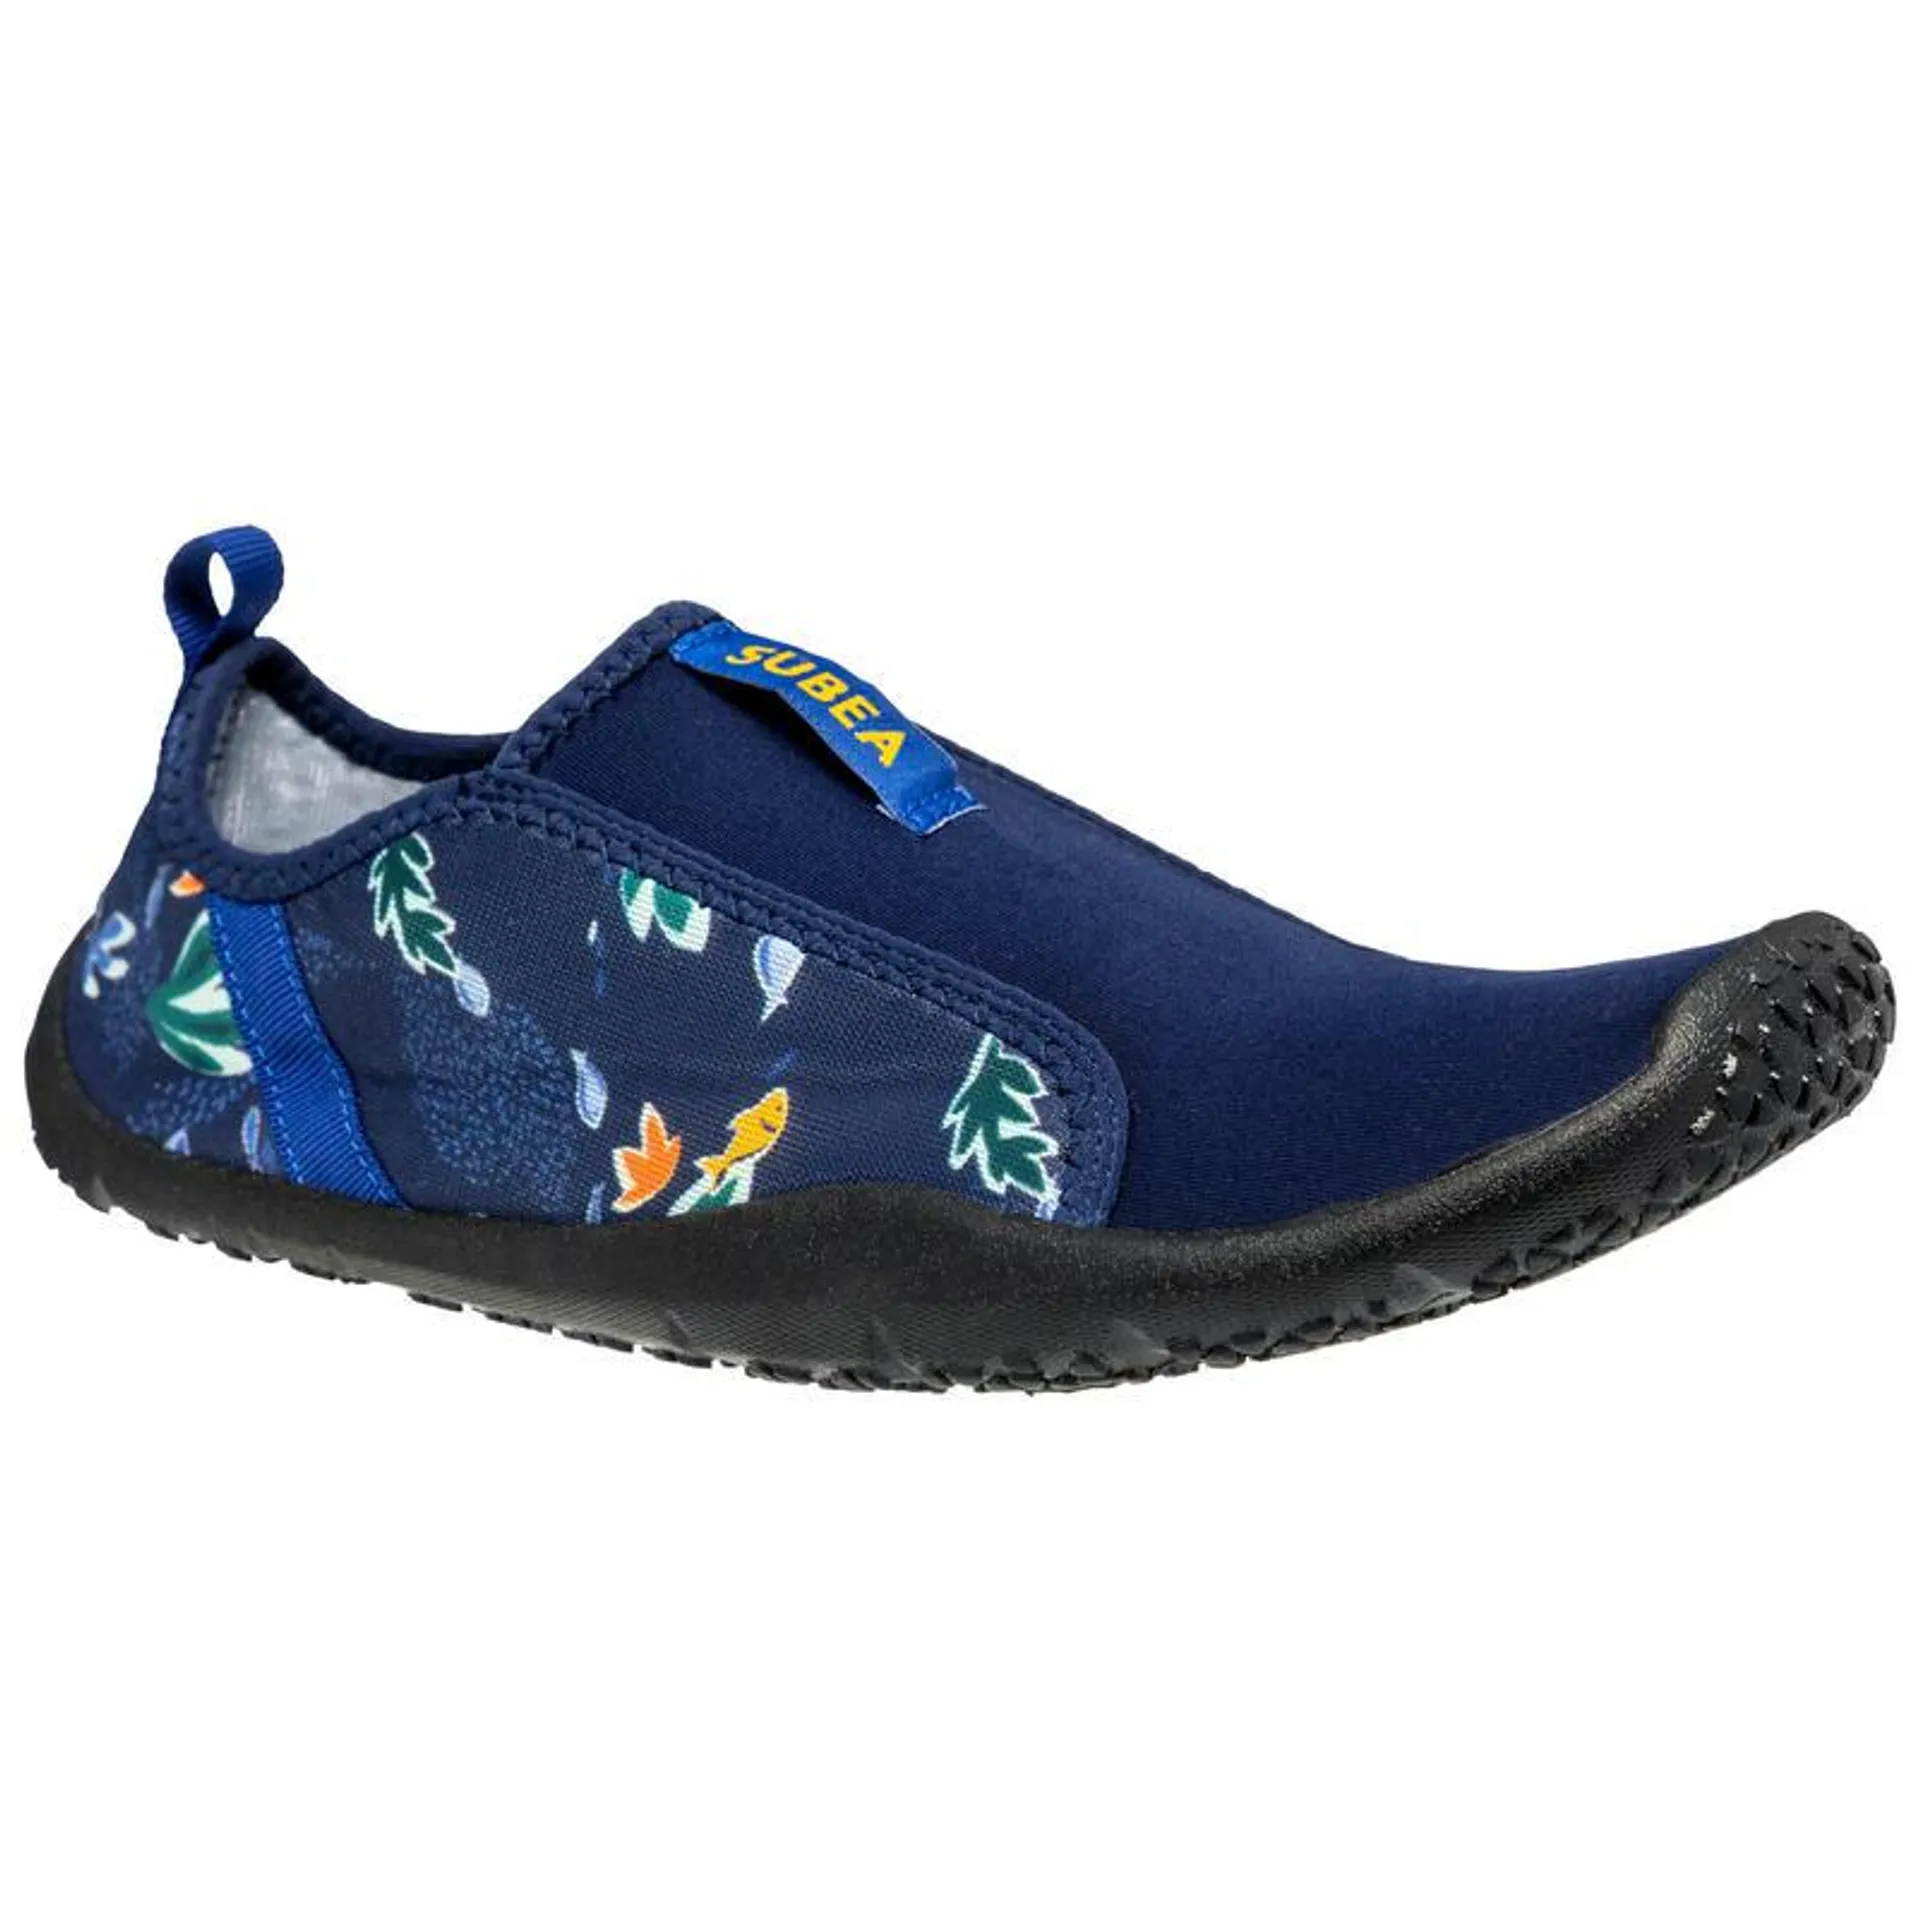 Adults elasticated aquashoes - Aquashoes 120 med sea black soles